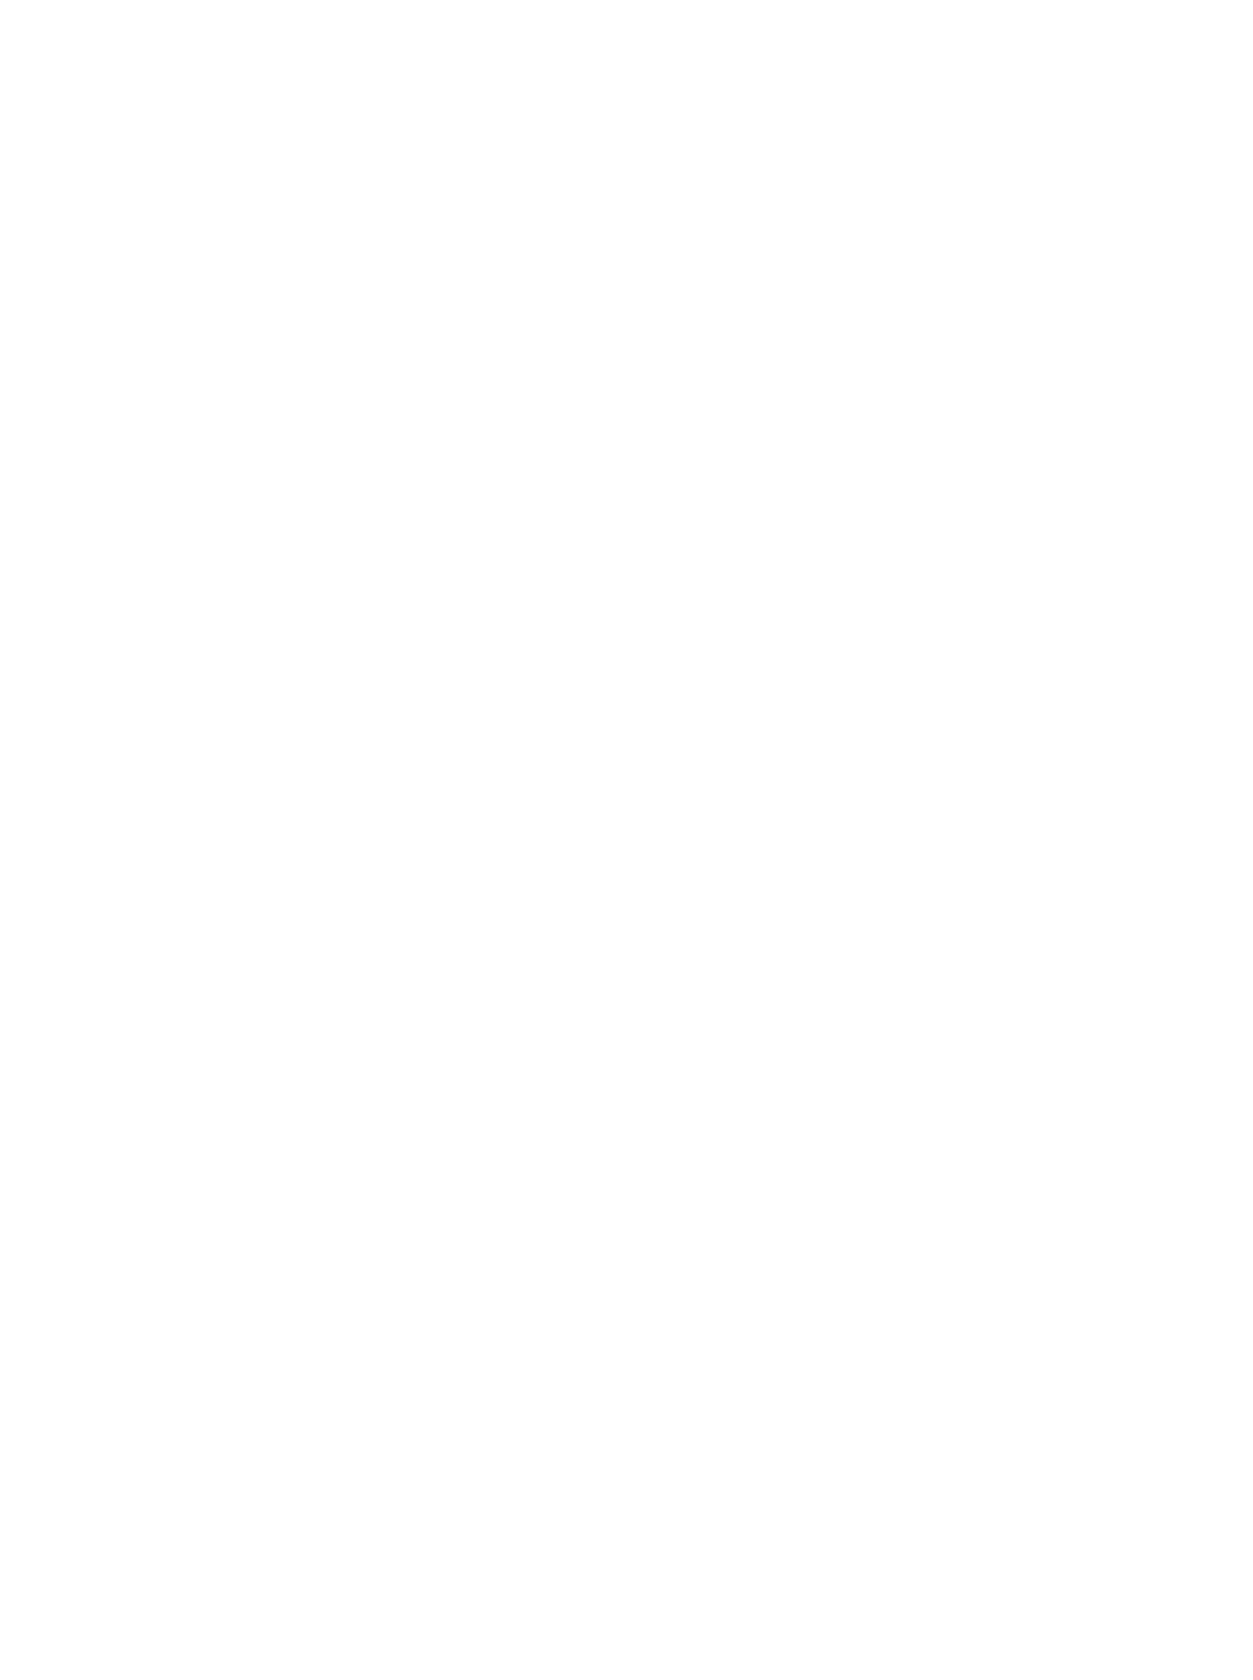 икона Божией Матери Казанская, иконопись, писаная икона, икона на заказ, икона на заказ в Минске